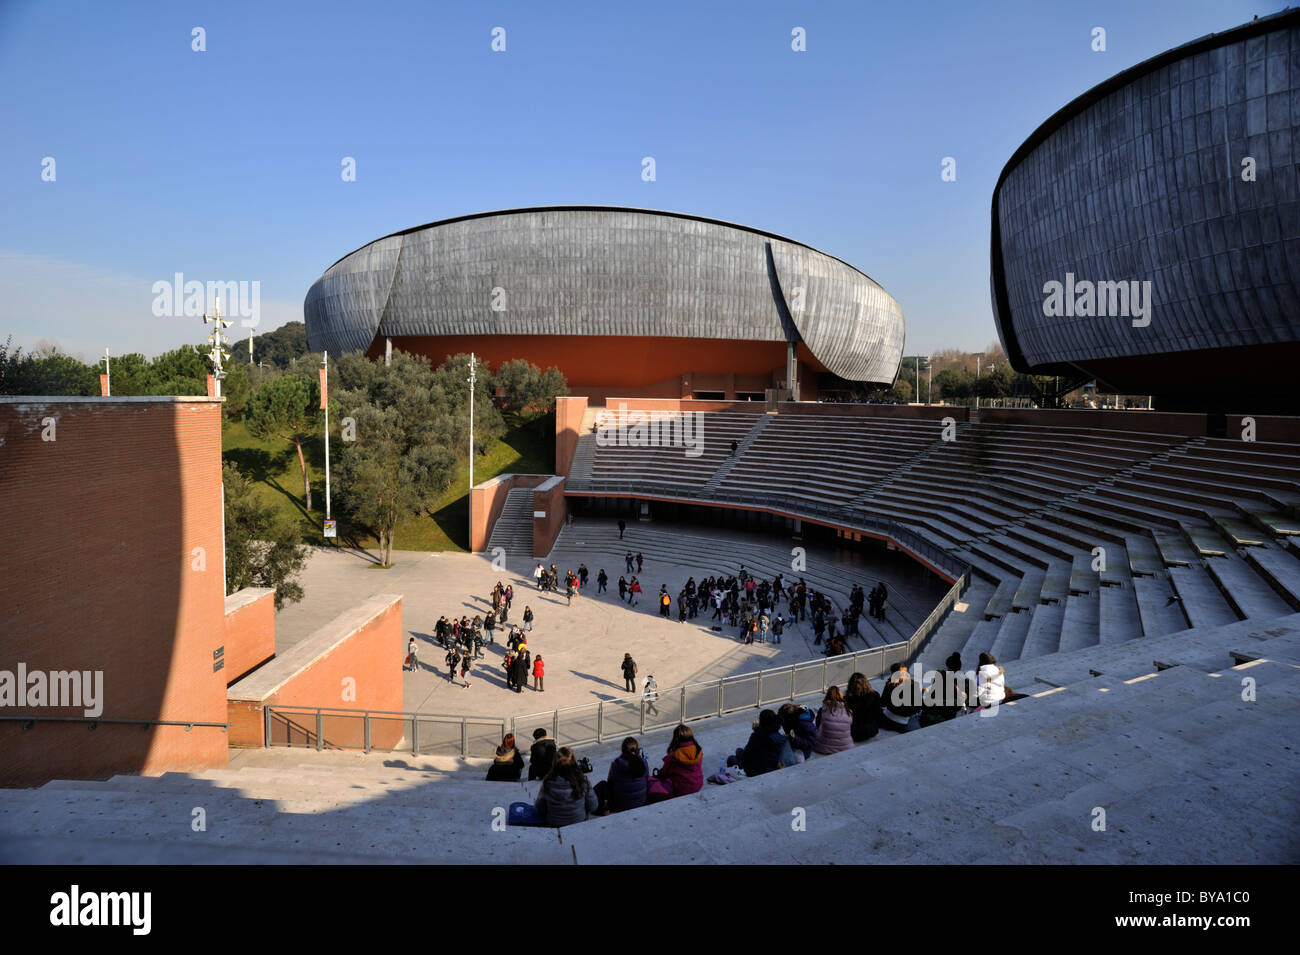 Italie, Rome, Auditorium Parco della Musica, architecte Renzo Piano Banque D'Images